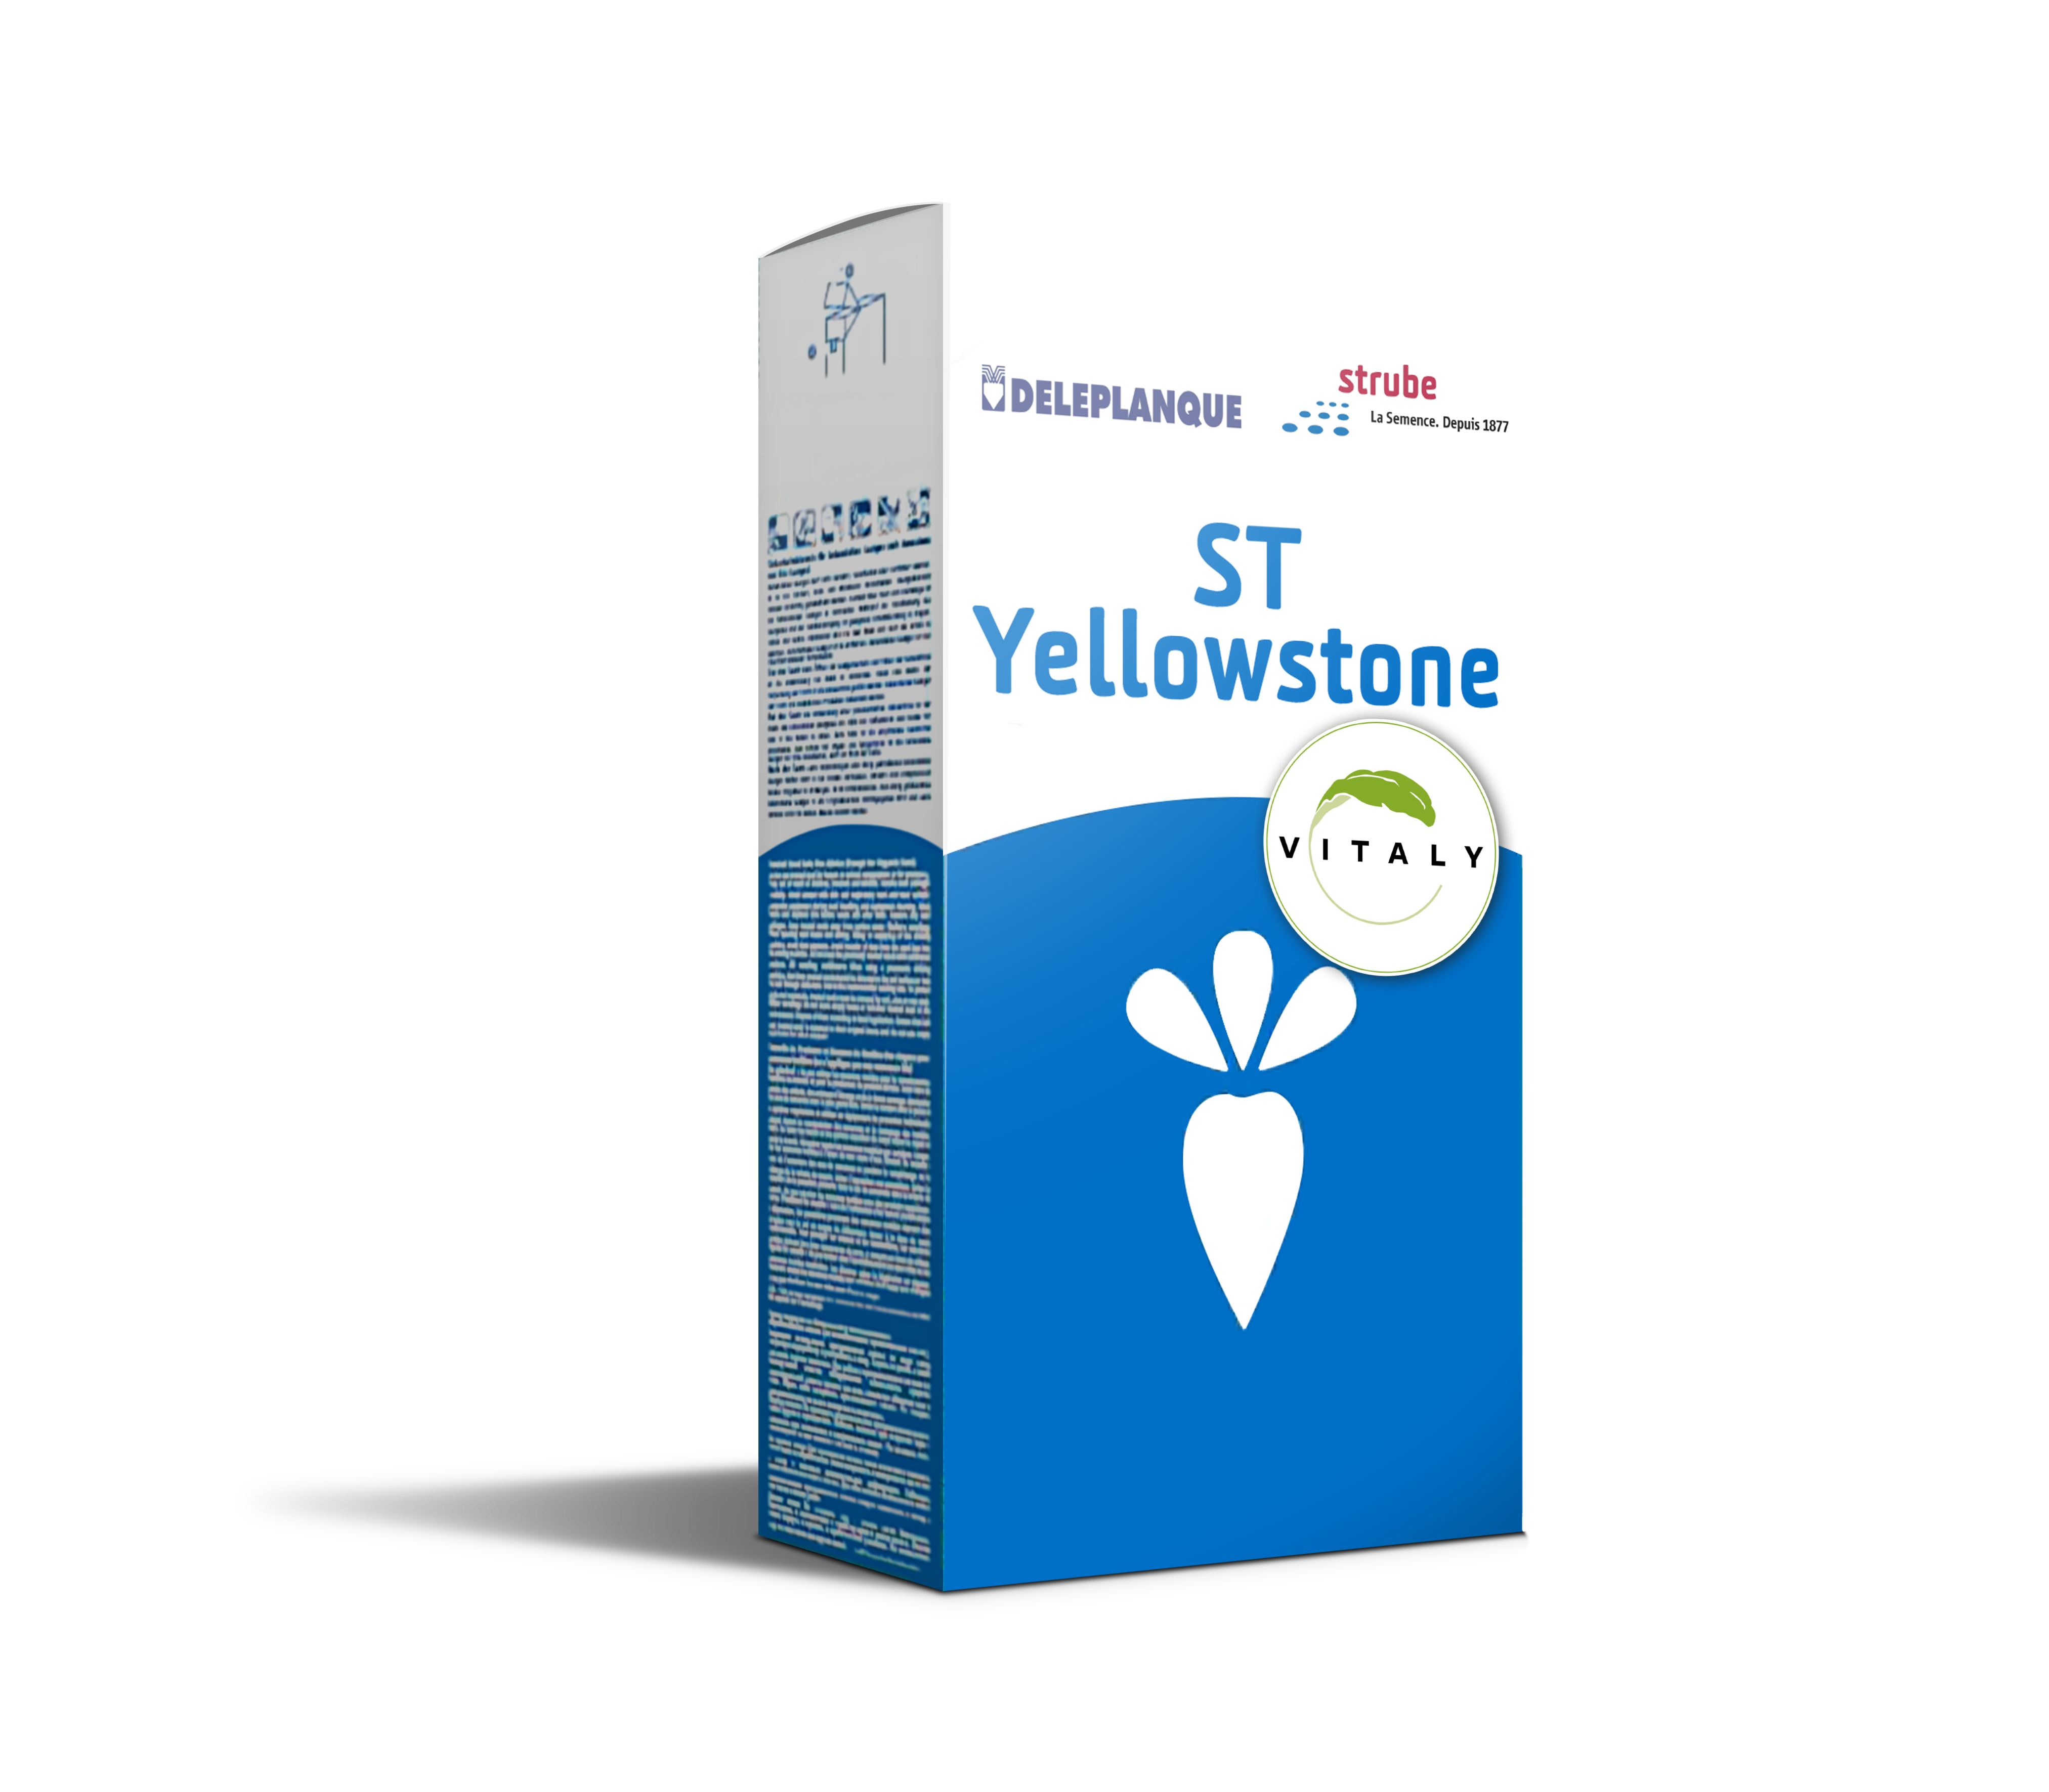 Visuel variété ST Yellowstone